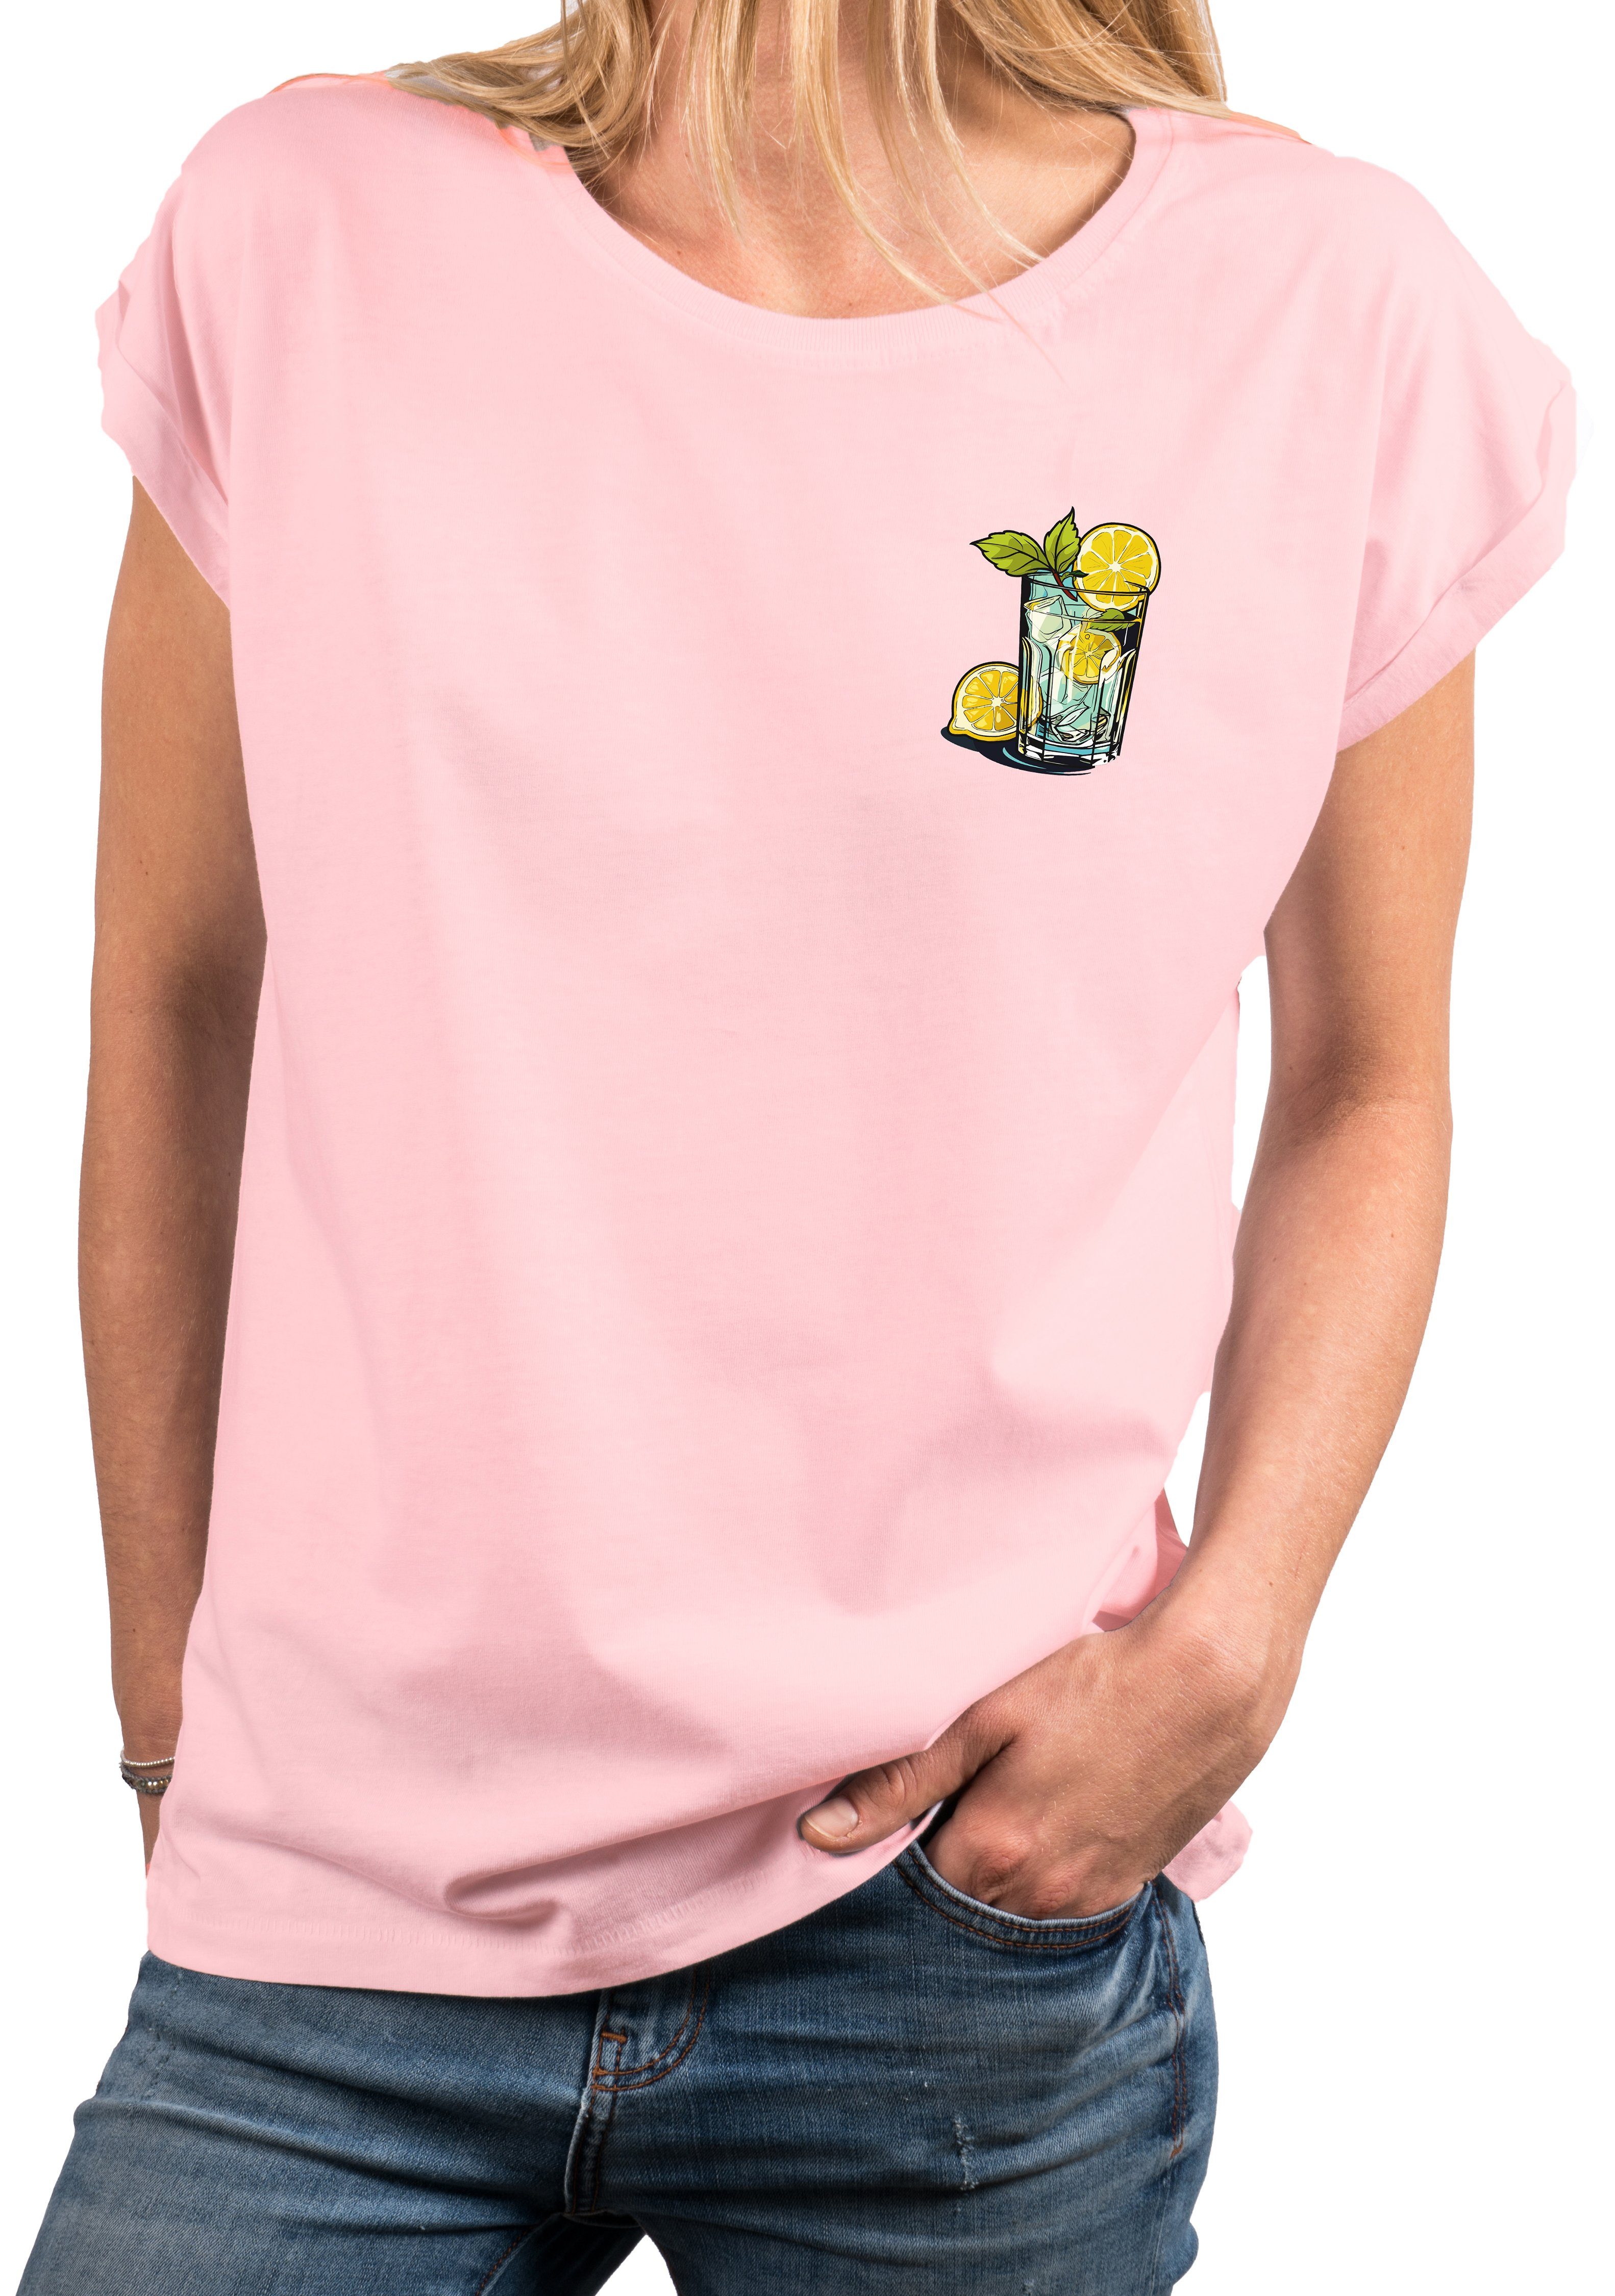 MAKAYA Print-Shirt Gin Tonic Gläser schöne modische Damen Tops Kurzarm Oberteile mit Druck, große Größen Rosa